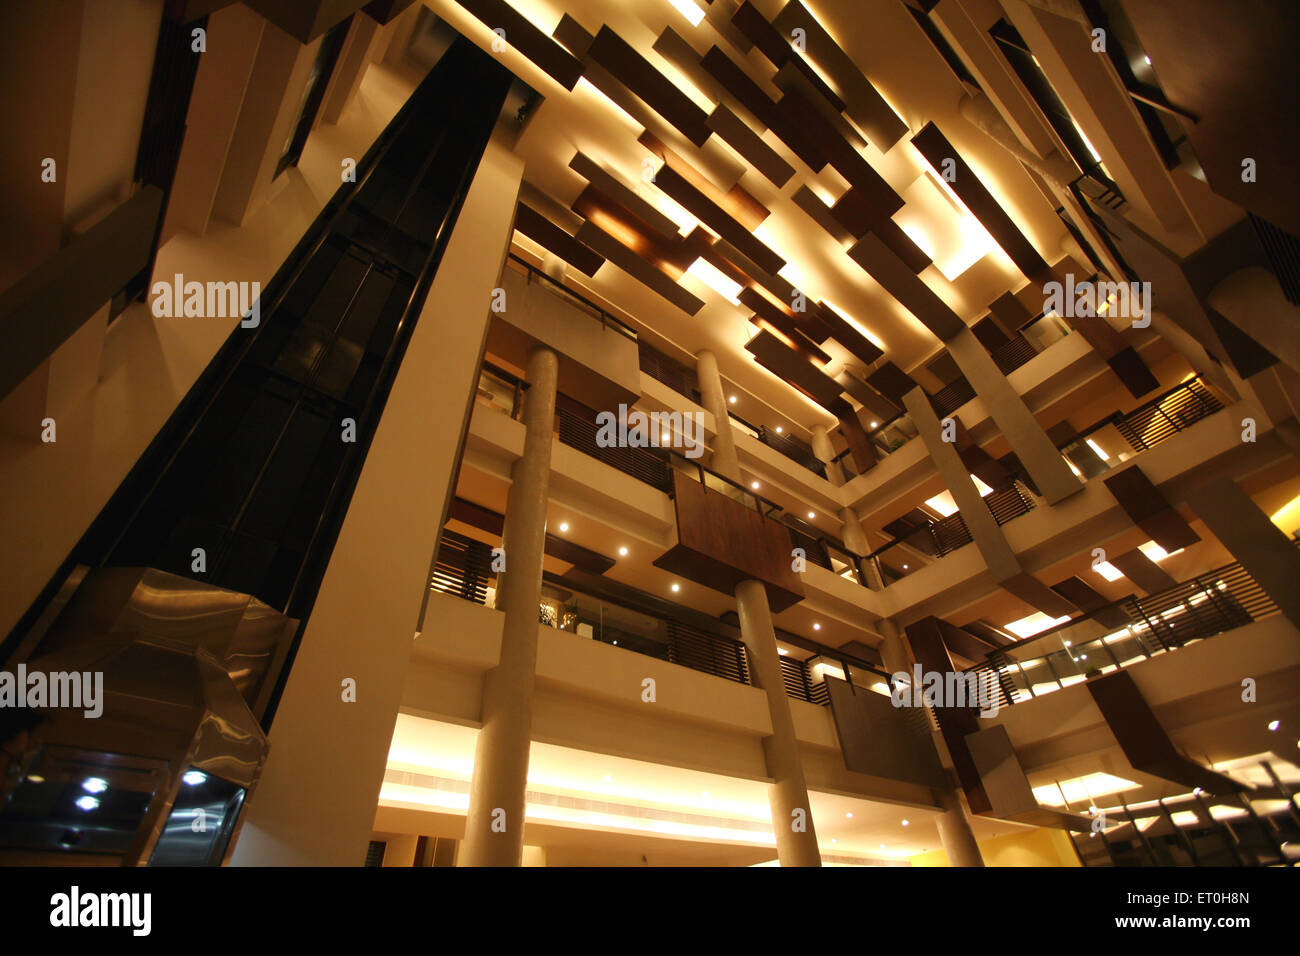 Plafond du bâtiment, intérieur de l'hôtel, plafond de l'hôtel, plafond de la réception, Ranchi, Jharkhand, Inde, intérieur indien Banque D'Images